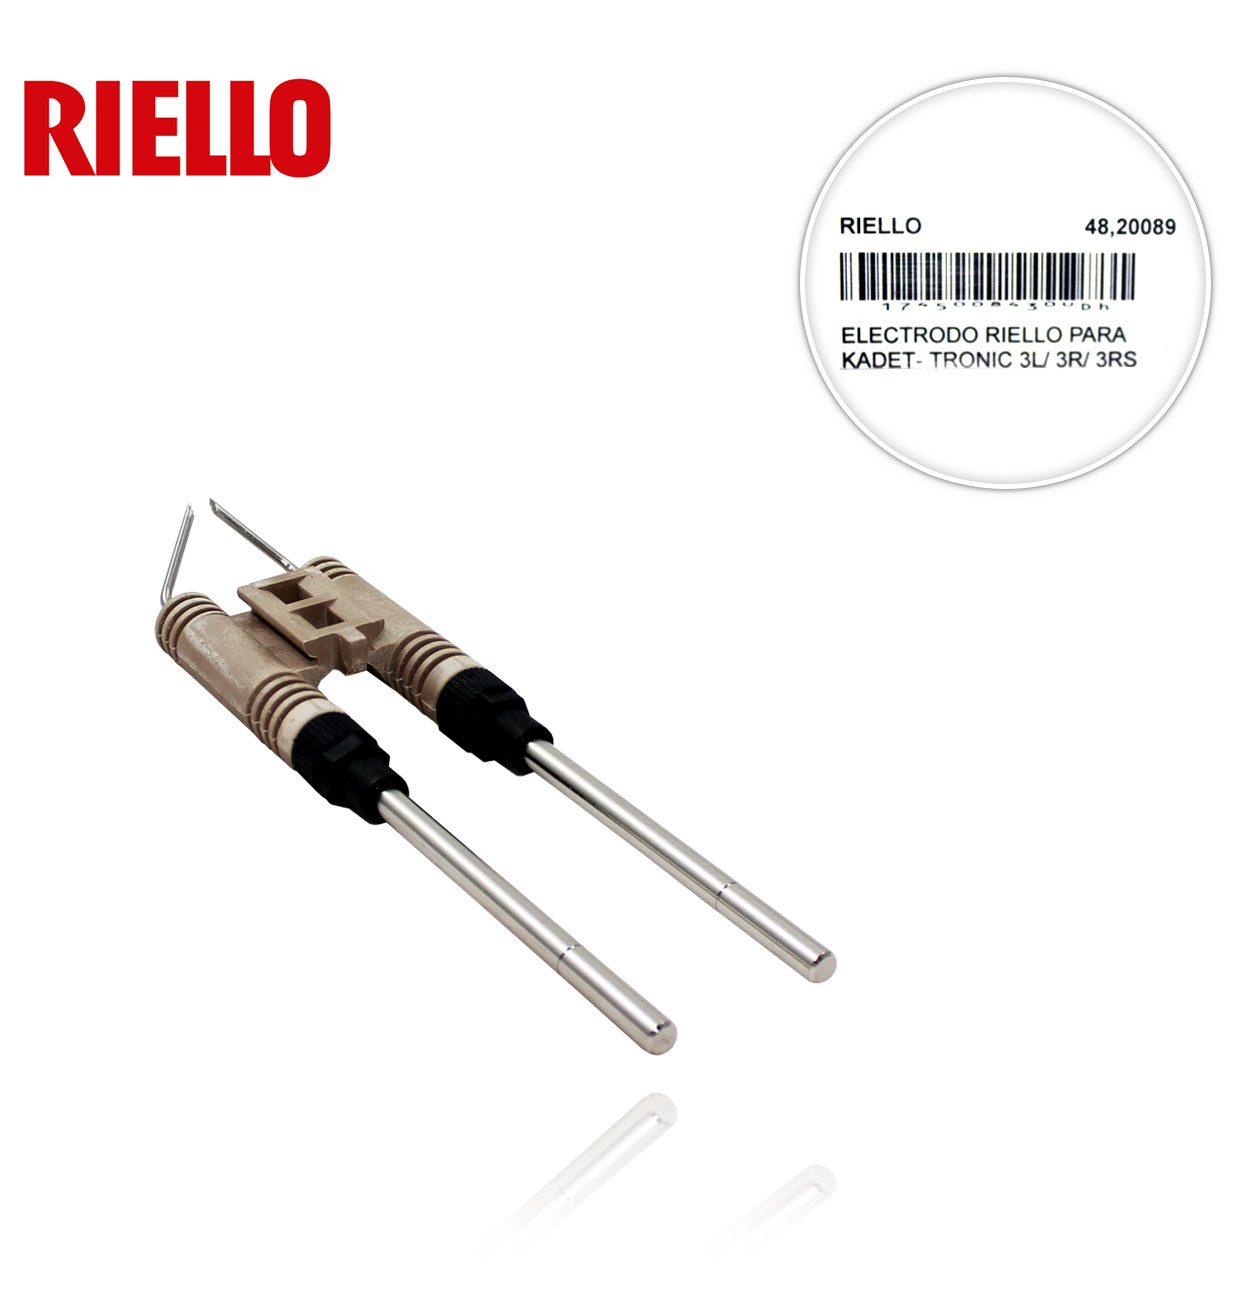 RIELLO 3005766 3L/ 3R/ 3RS KADET-TRONIC ELECTRODE